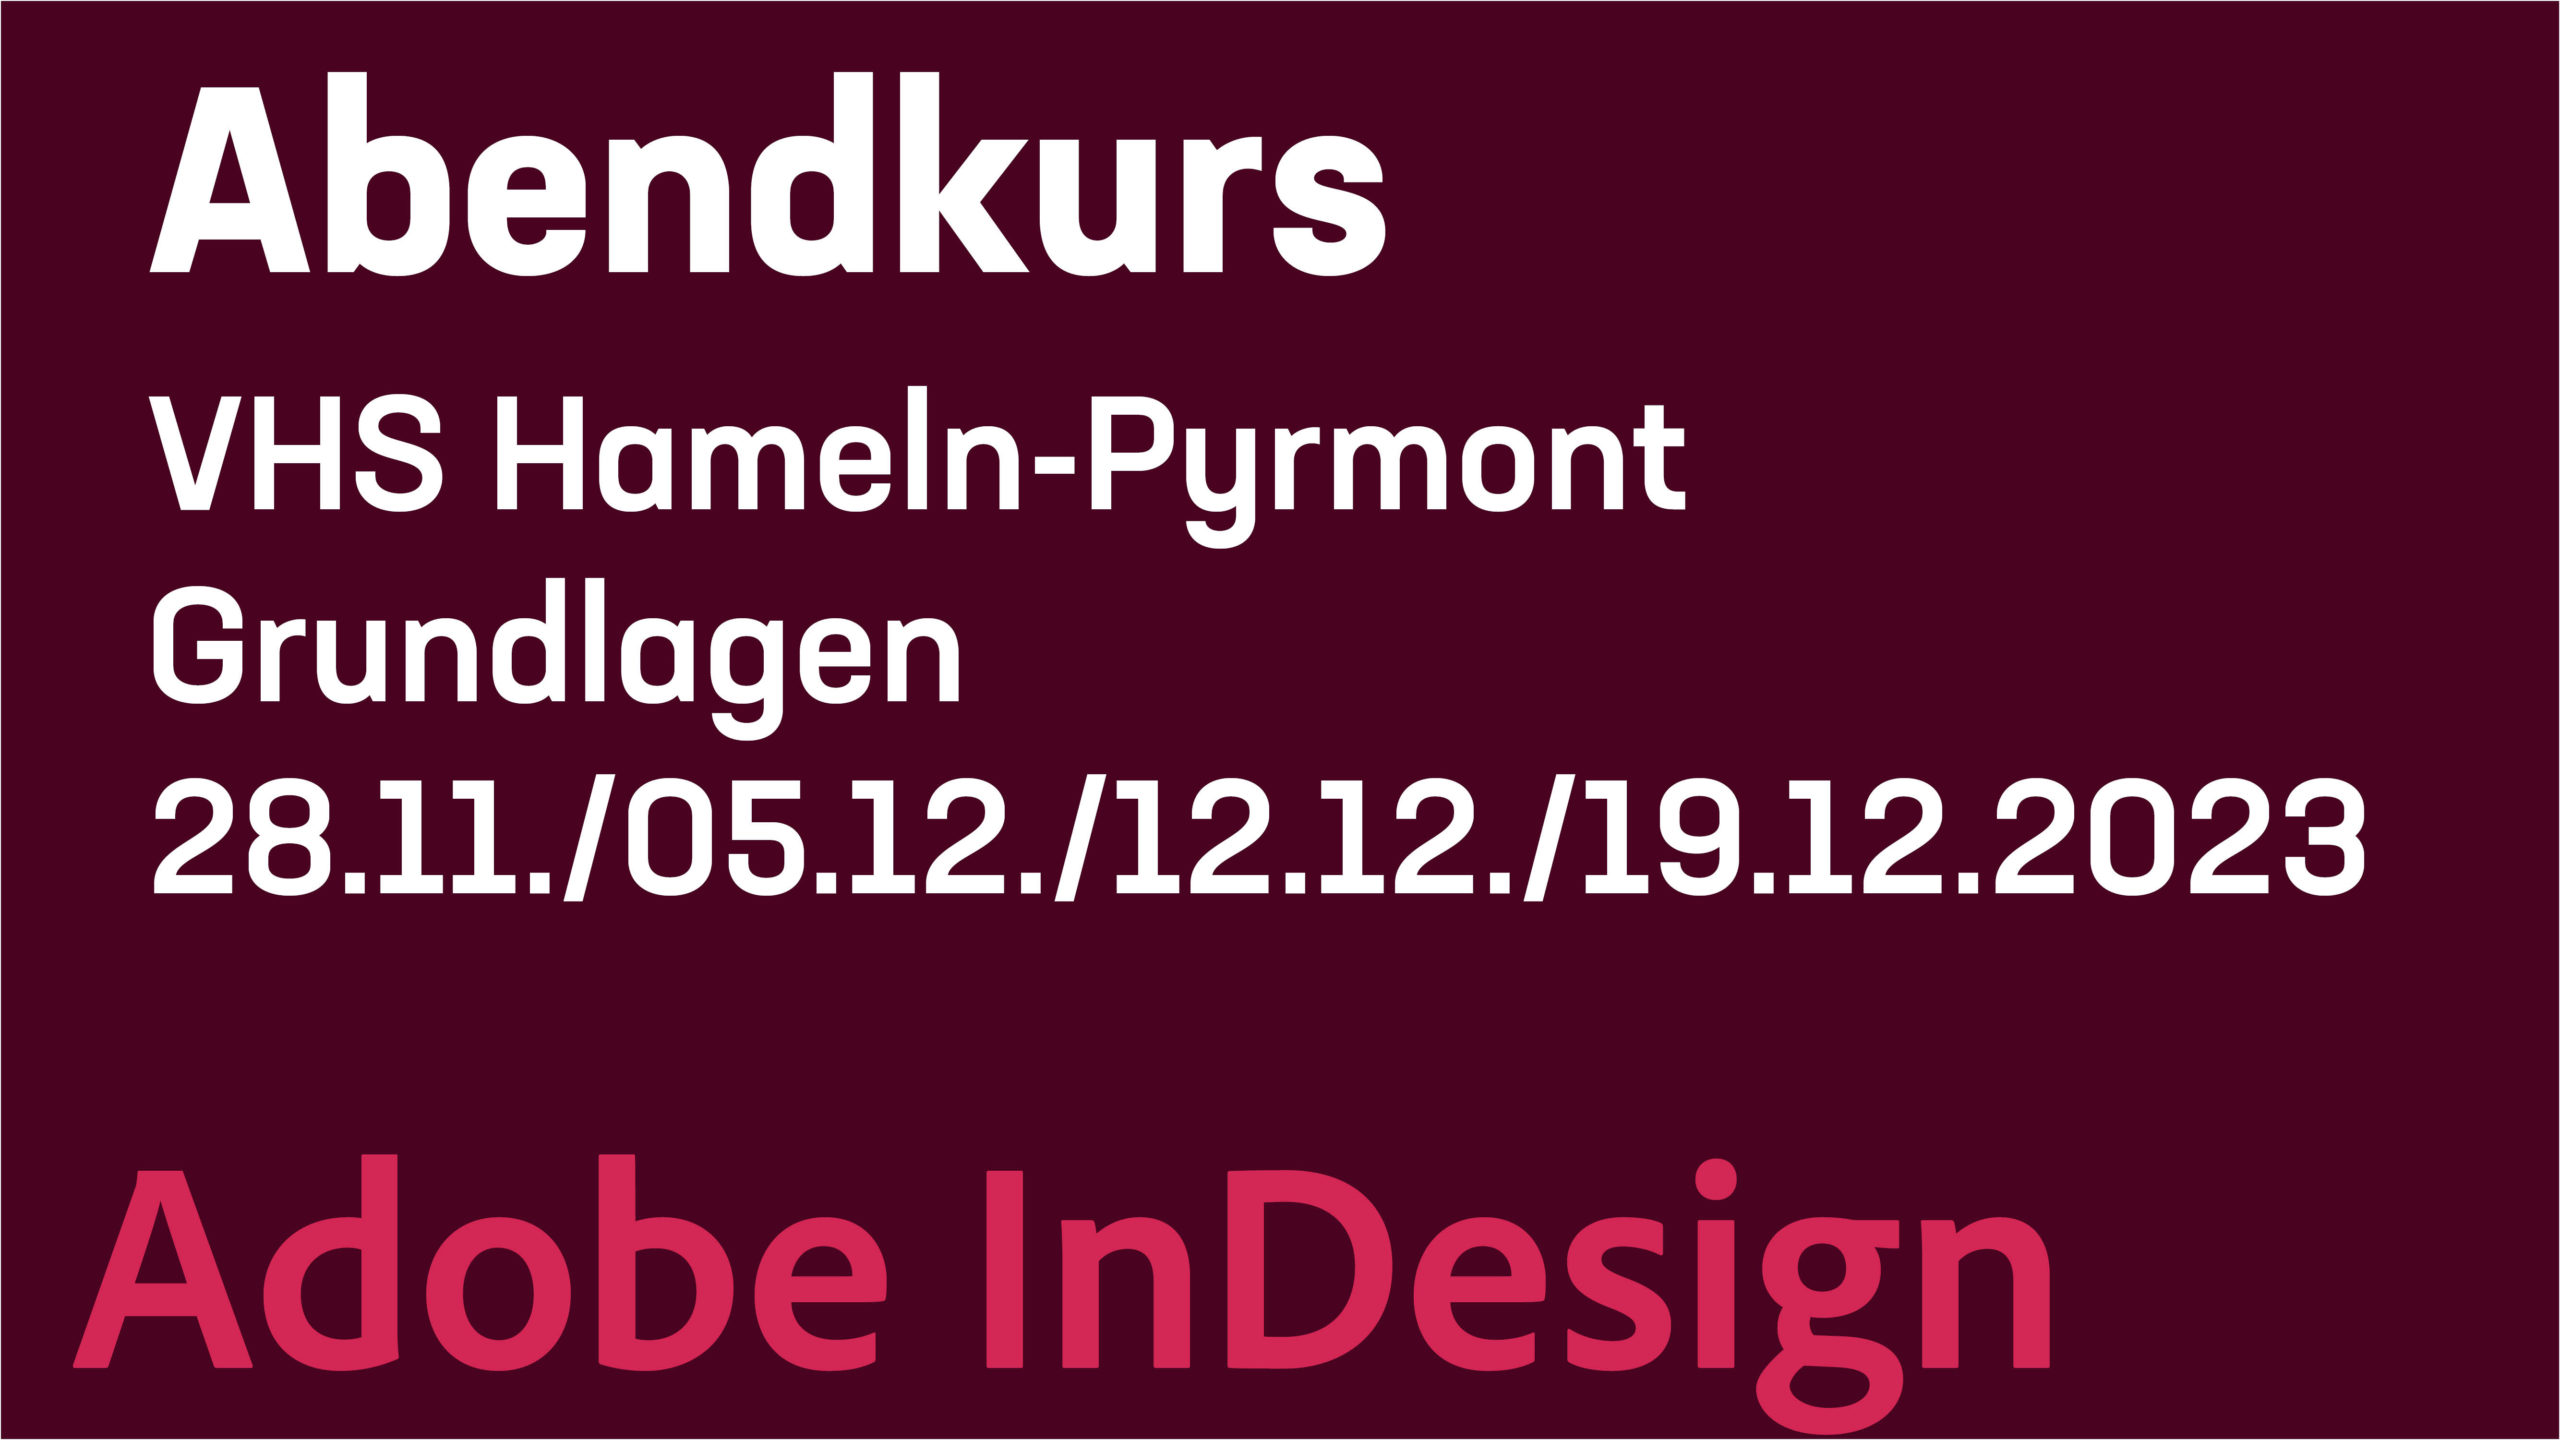 Adobe InDesign - Abendkurs - Grundlagen - VHS Hameln-Pyrmont - 28.11.2023